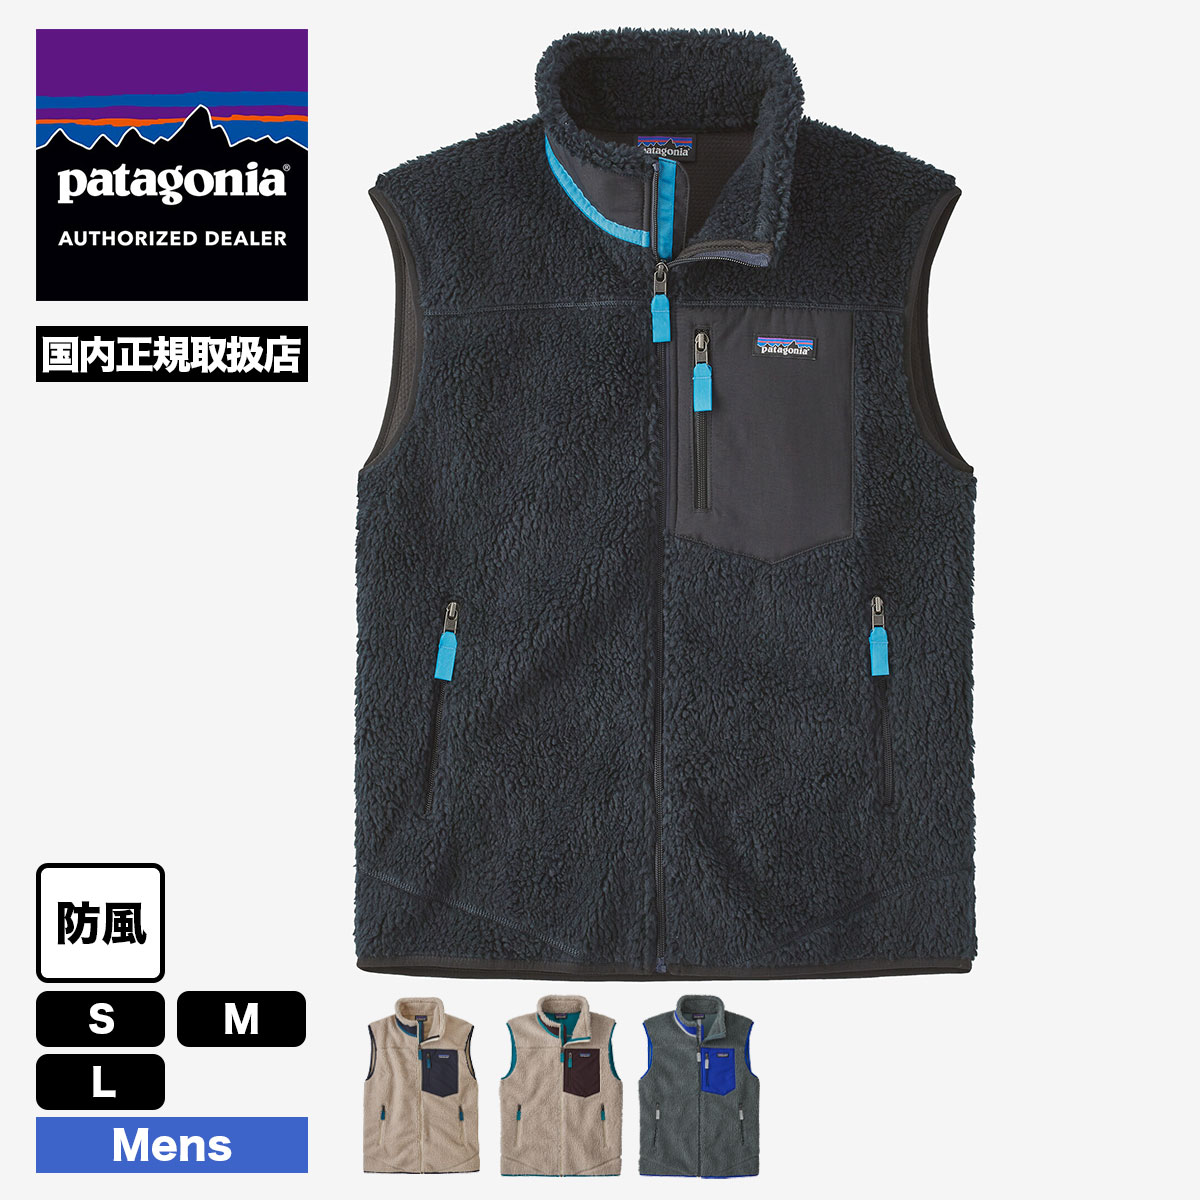 【40%OFF アウトレット セール】Patagonia パタゴニア ベスト フリース アウター メンズ・クラシック・レトロX・ベスト 防風 全4色  Men's Classic Retro-X Fleece Vest サーフィン 釣り アウトドア キャンプ S M L 人気 ブランド 